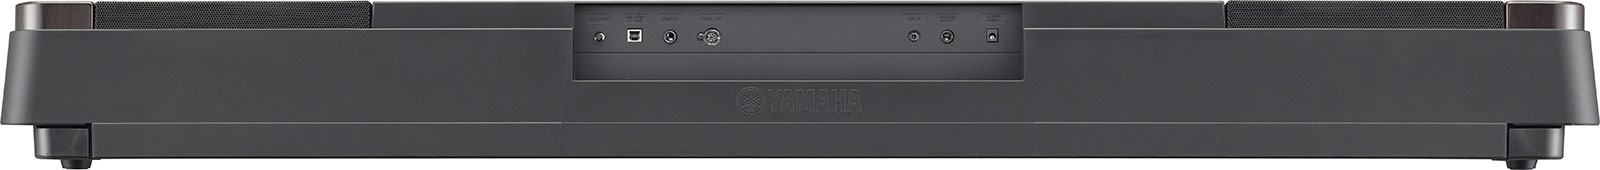 Цифровое фортепиано Yamaha DGX-650B